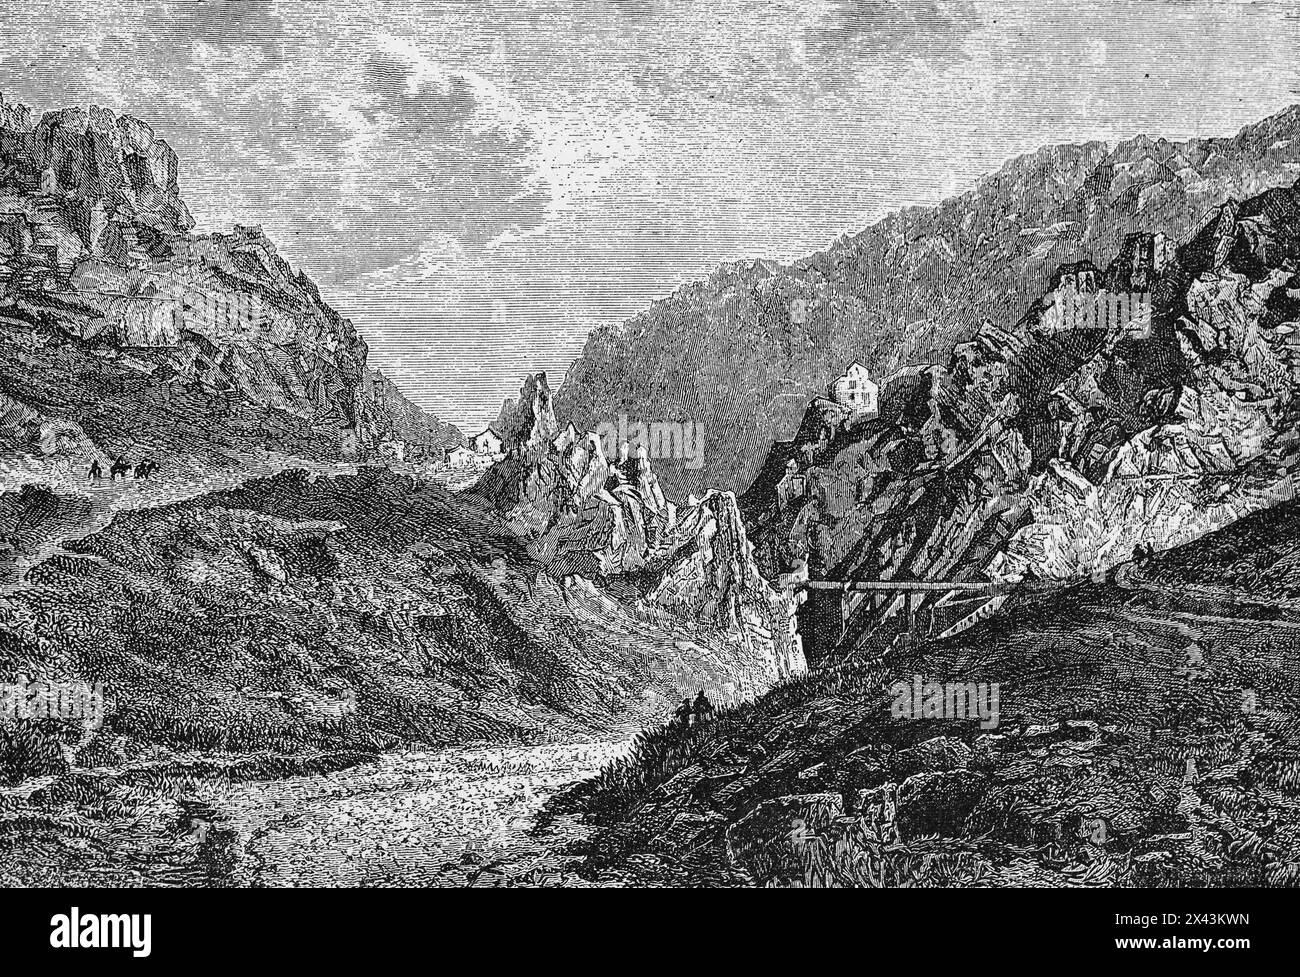 Bergpass des Römischen Reiches Despenaperros, Despeñaperros, Andalusien, Spanien, historische Illustration 1884 Stockfoto